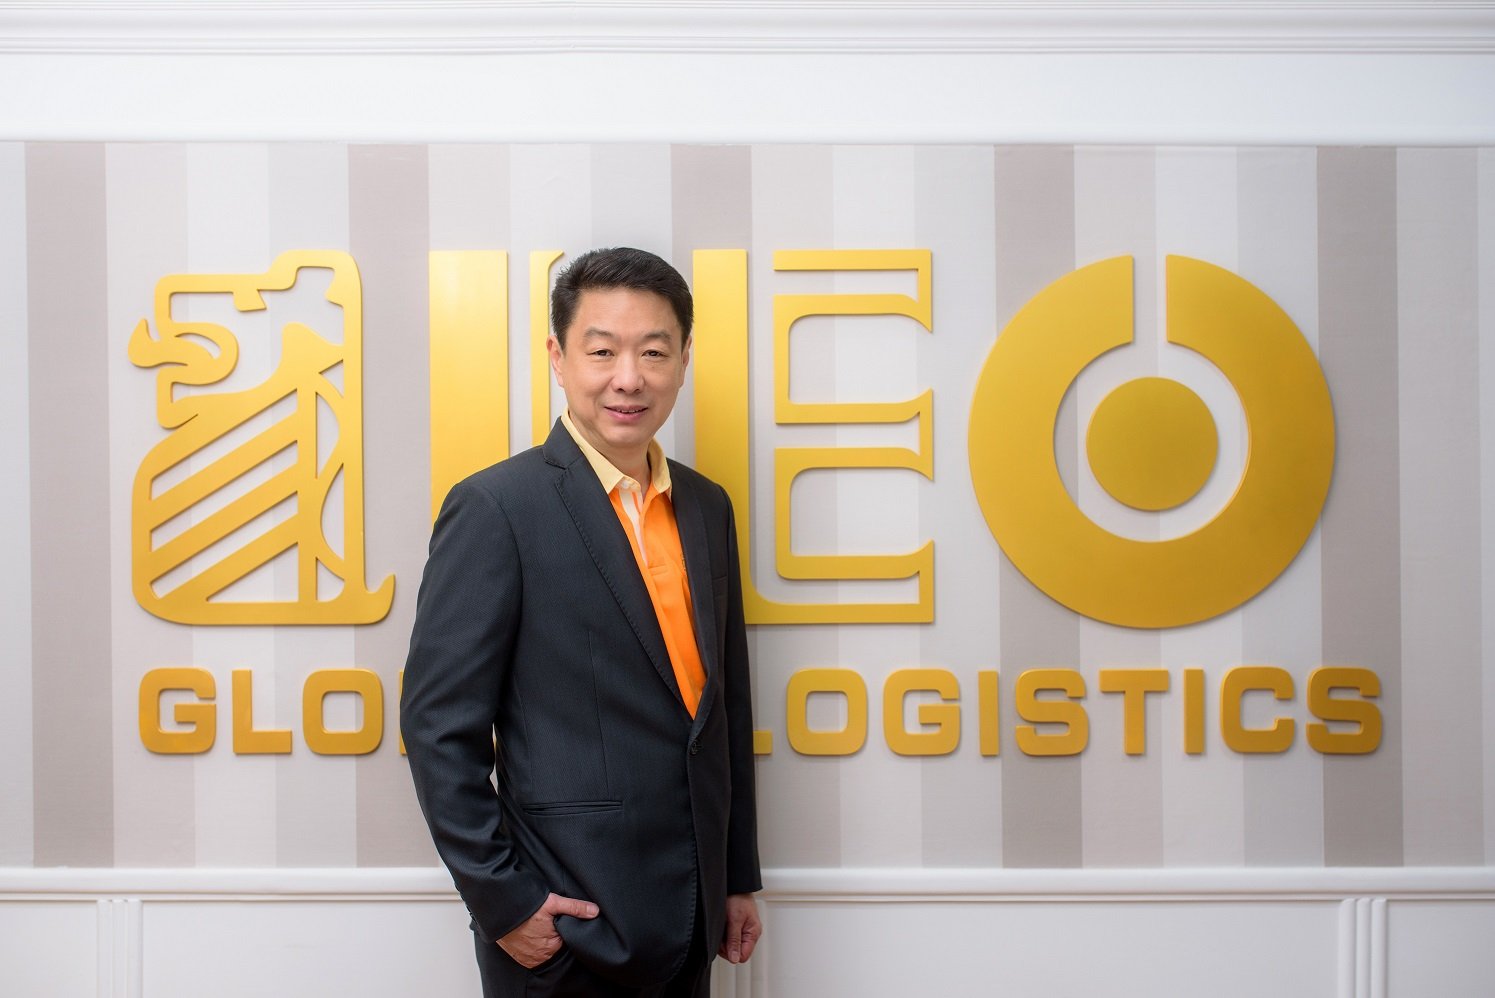 LEO ตั้ง 4 บริษัทใหม่ รุกธุรกิจ Non Freight ช่วยเติมเต็มธุรกิจโลจิสติกส์ให้ครบวงจร และสร้างการเติบโตอย่างยั่งยืน